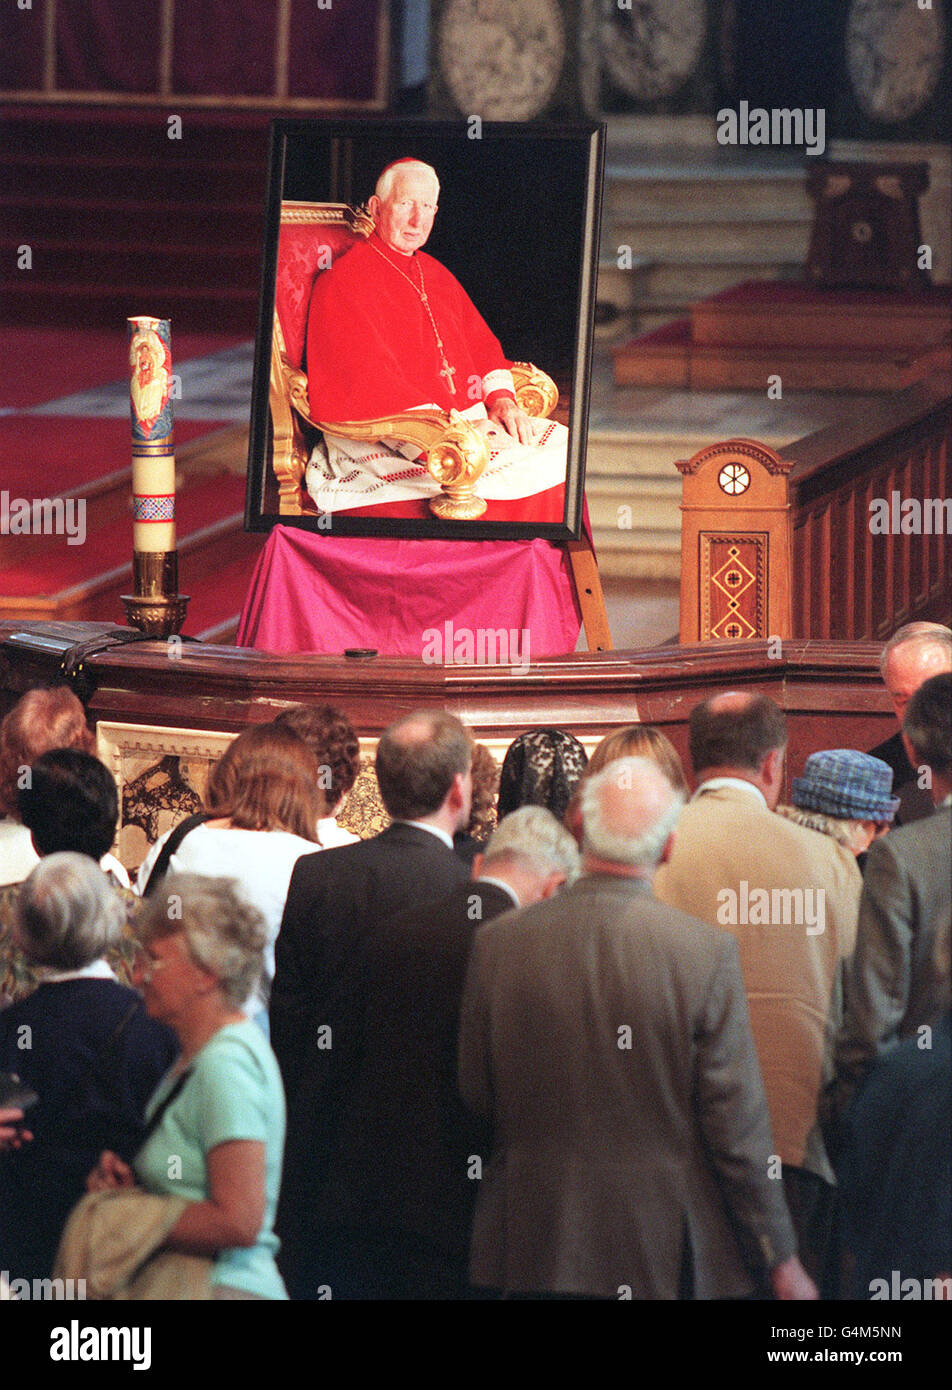 Un ritratto del Cardinale Basil Hume grava una solenne messa in suo onore, nella Cattedrale di Westminster. Il Cardinale Hume, leader spirituale dei cattolici romani britannici, morì il 17/6/99, all'età di 76 anni. Foto Stock